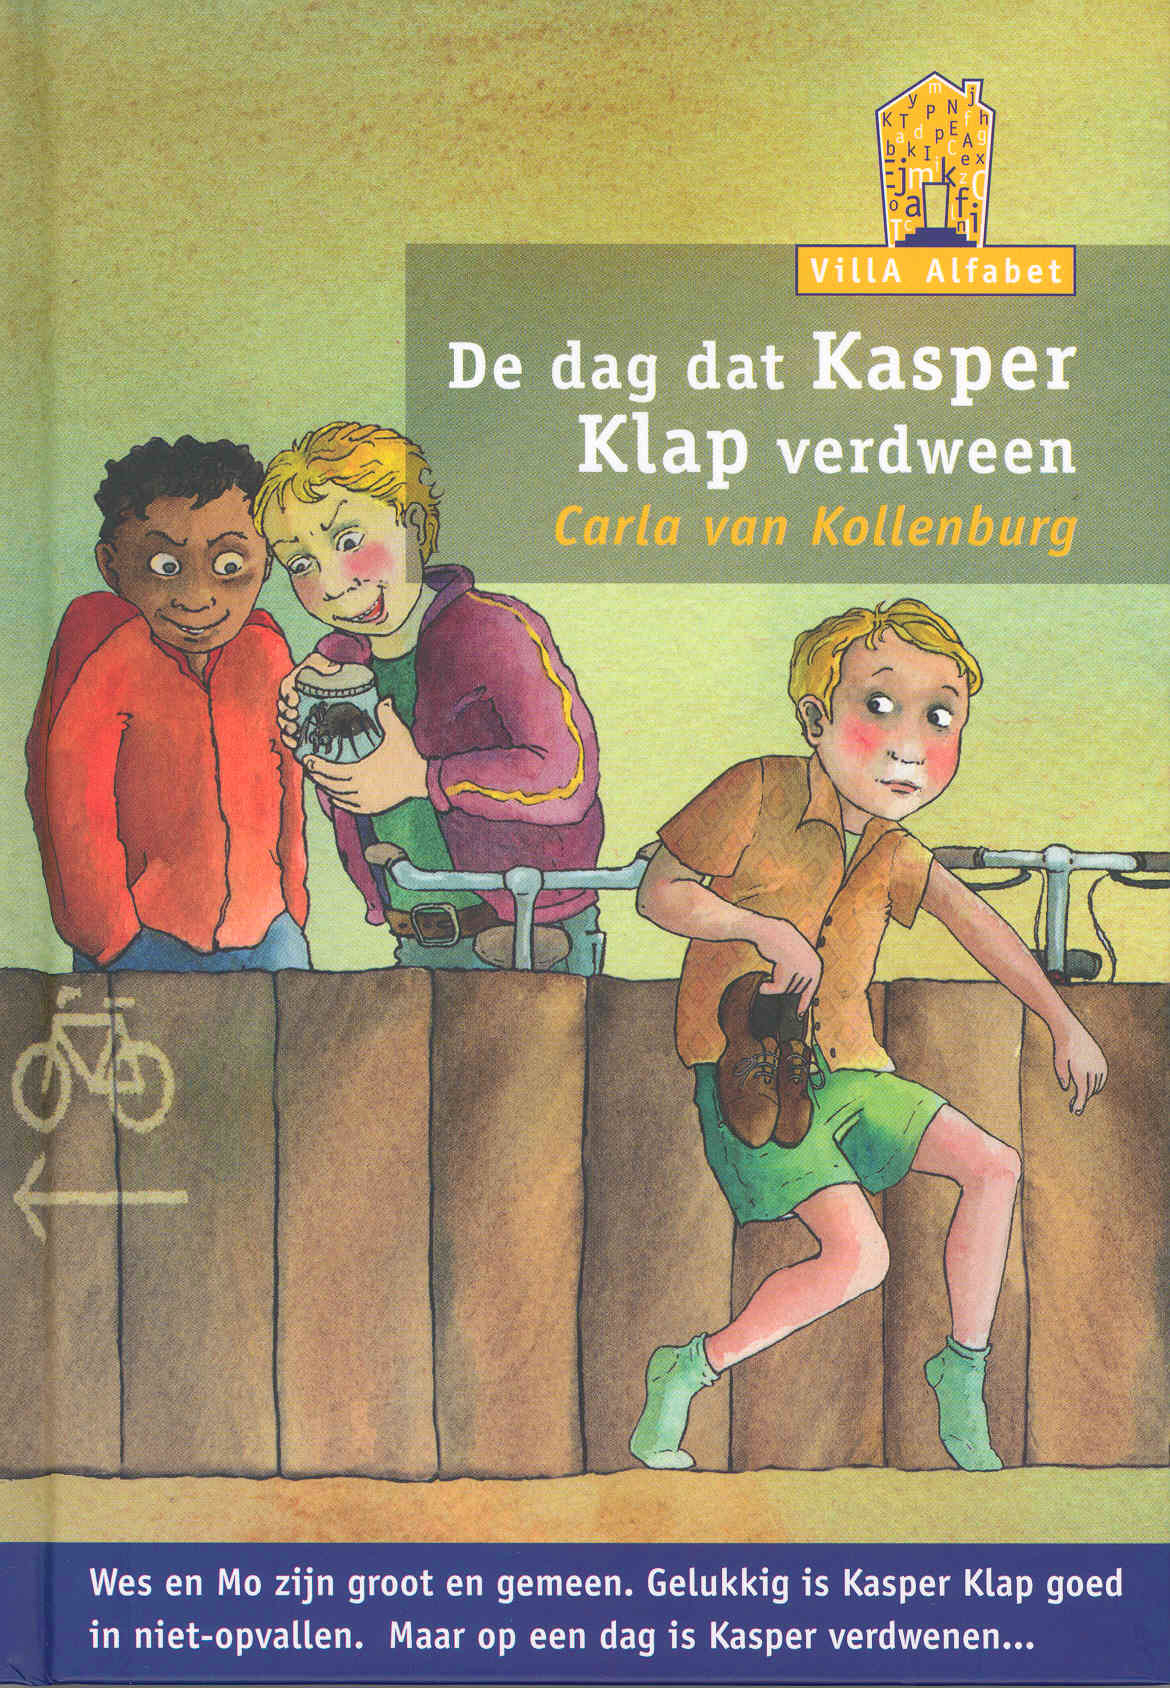 MNBVOR703 De dag dat Kasper Klap verdween